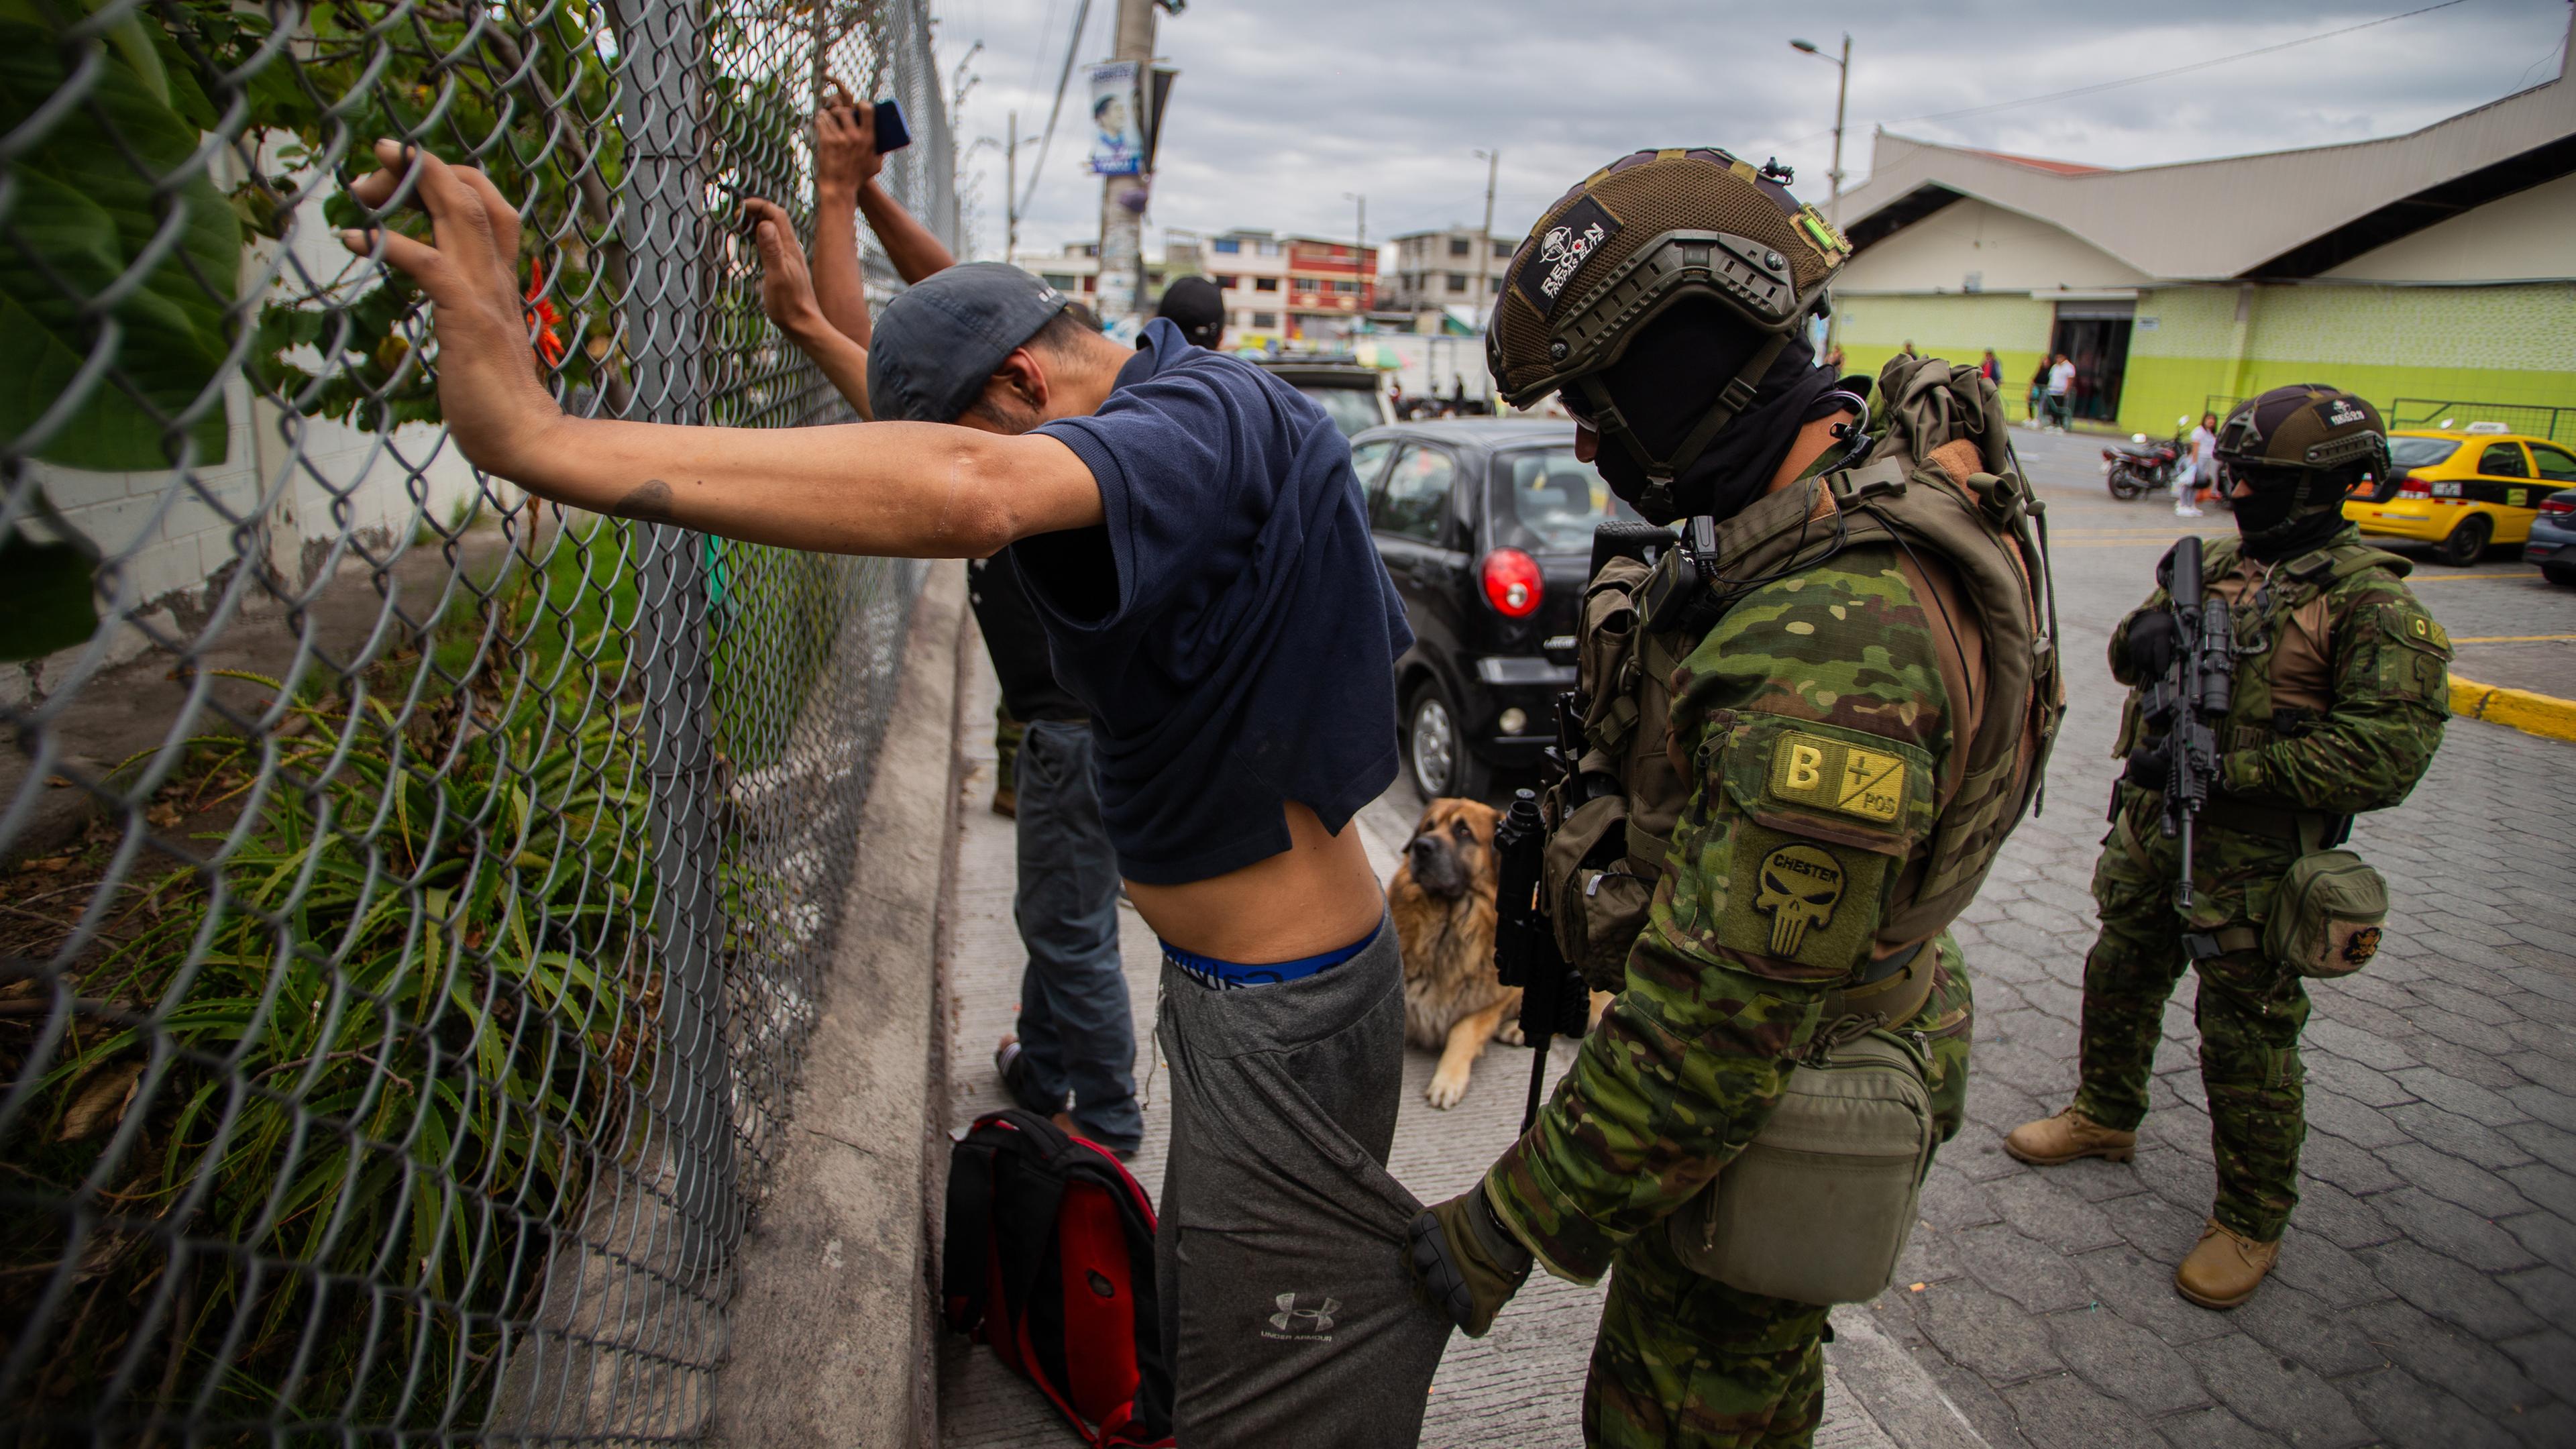 Ein Soldat kontrolliert die Taschen eines mit dem Rücken zu ihm stehenden Mannes, der seine Hände an einen Zaun gelegt hat.